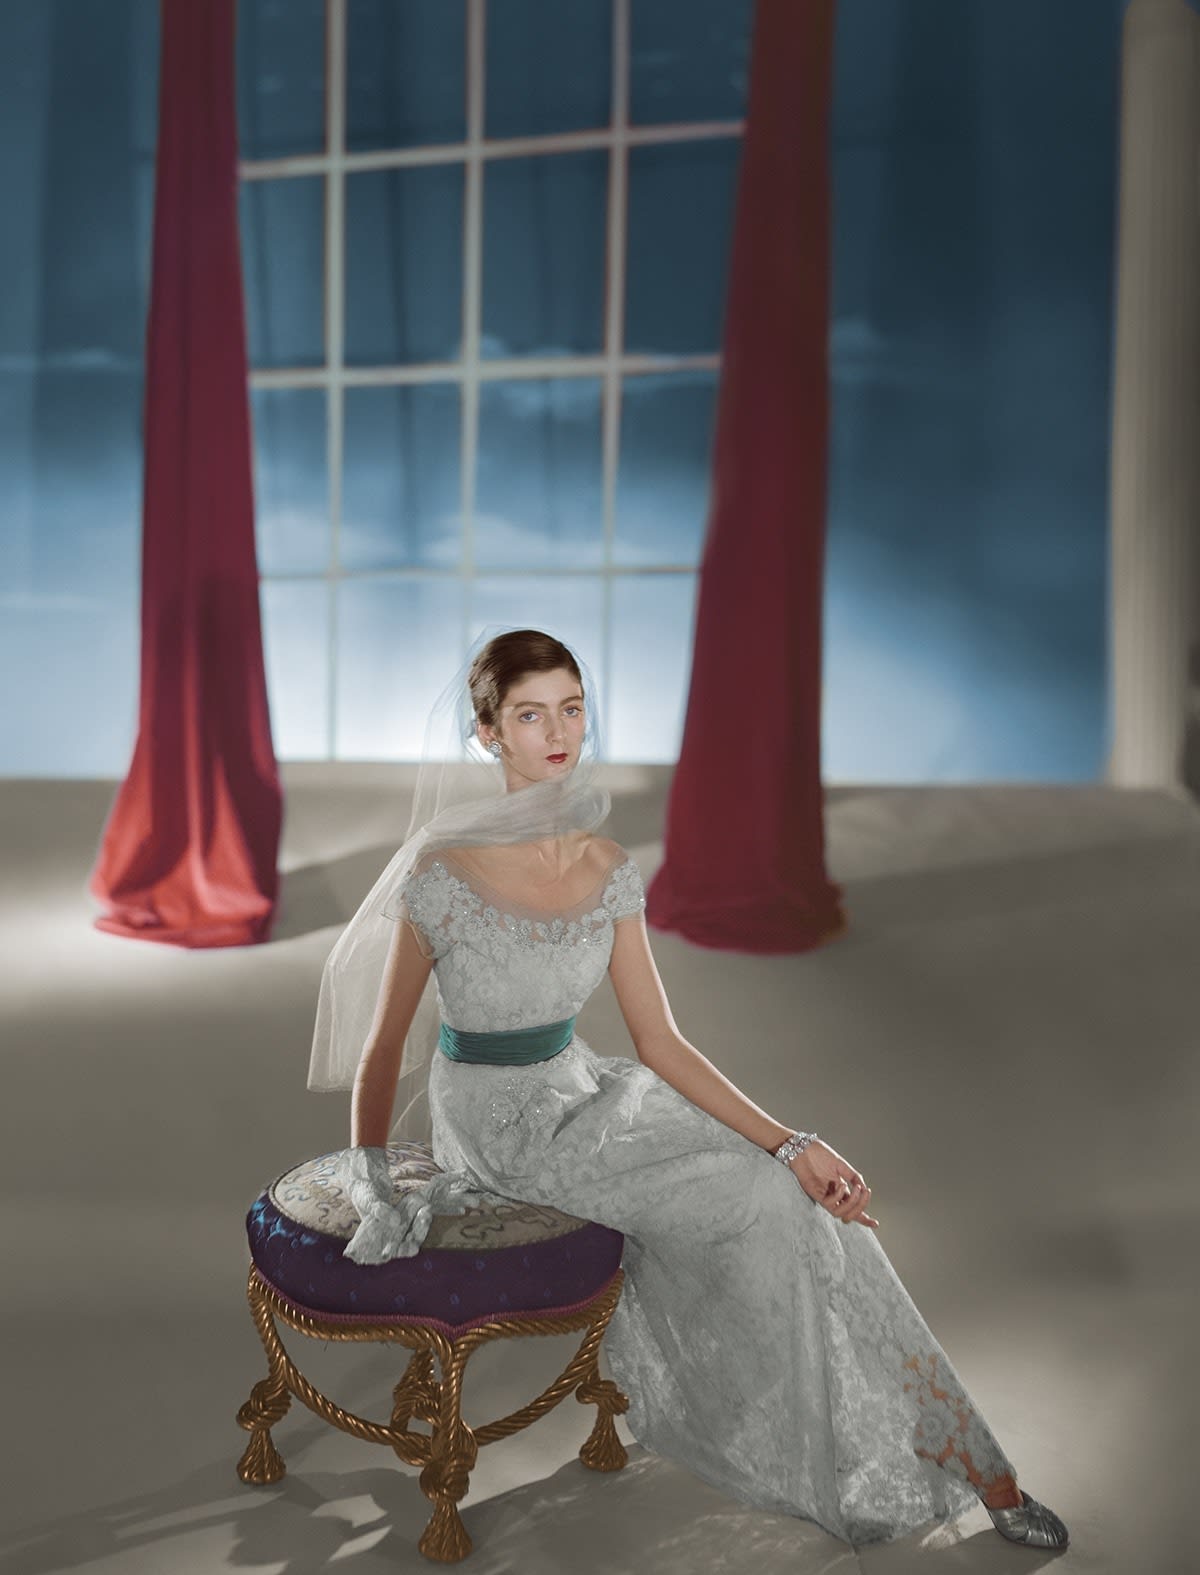 Horst P. Horst, Carmen Dell'Orefice, Dress by Hattie Carnegie, 1947